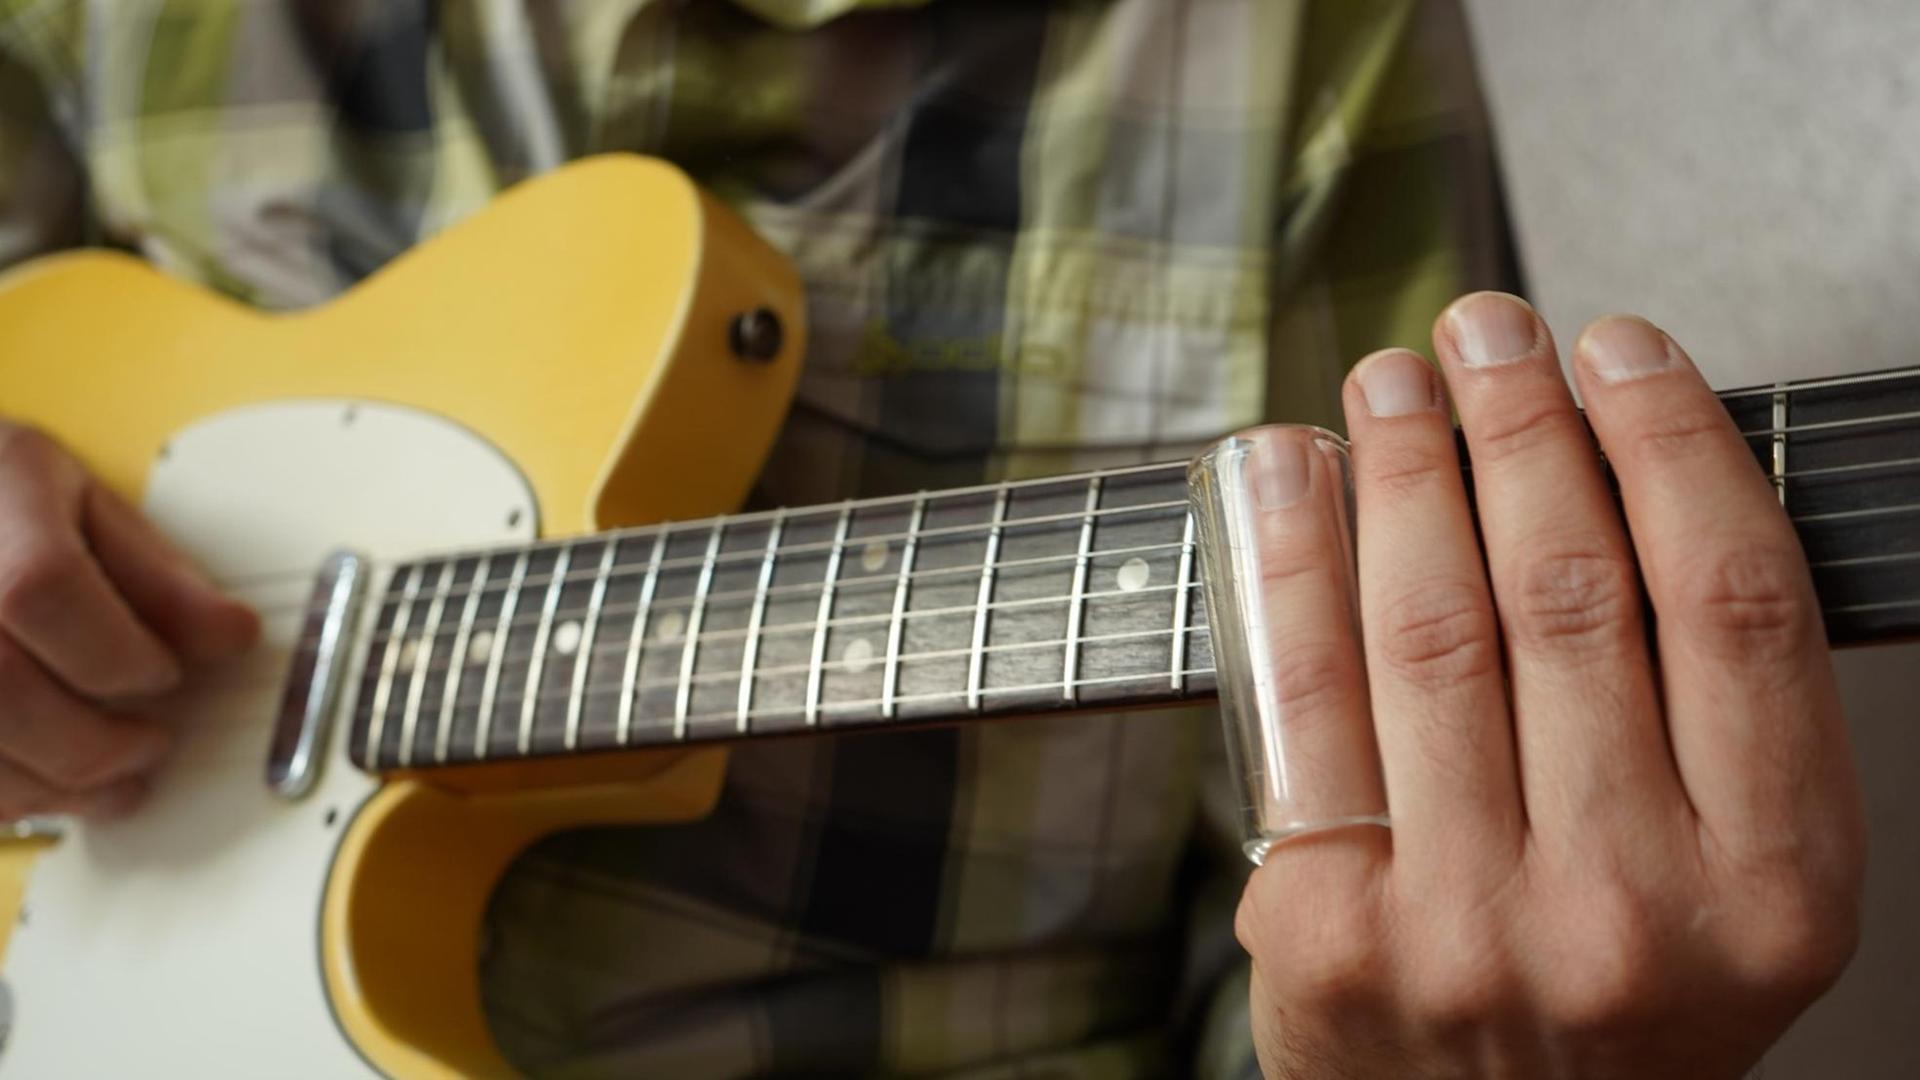 Ein Mann hat ein Glasrohr auf seinem Ringfinger stecken und greift mit der Hand den Hals einer gelben Gitarre, einer Fender Telecaster.